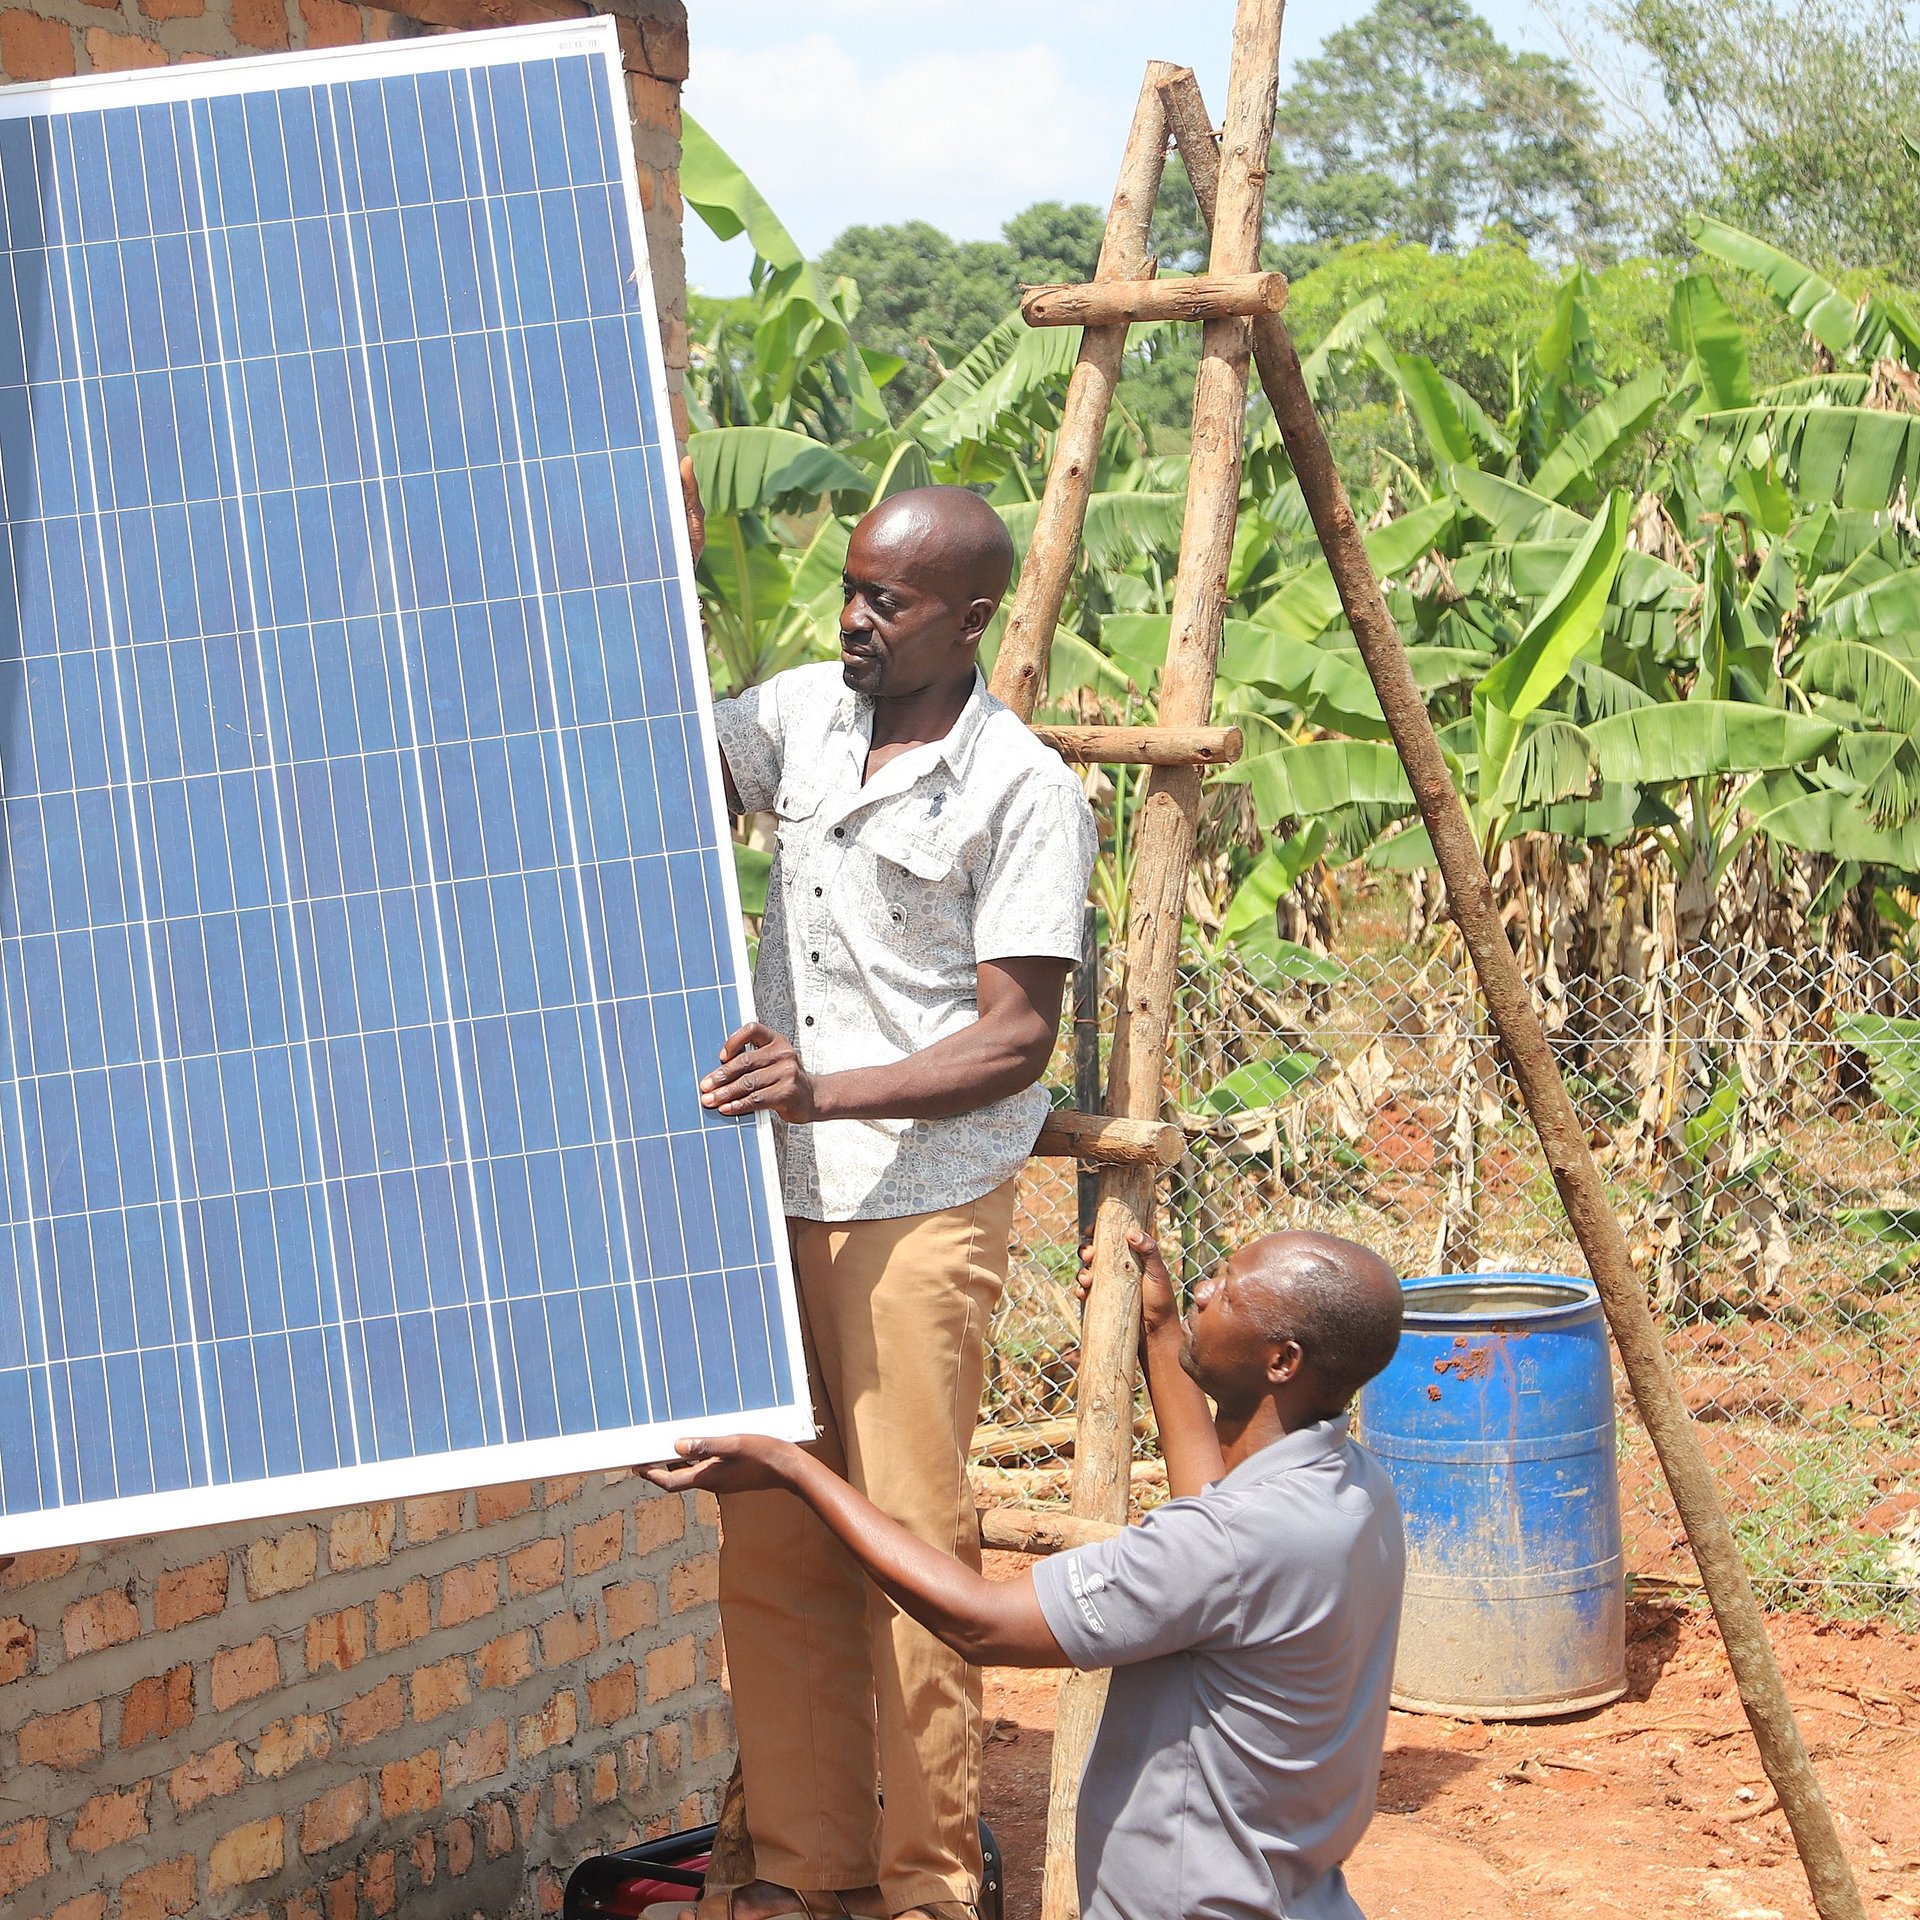 Zwei Männder installieren Solaranlage in dörflicher Umgebung.